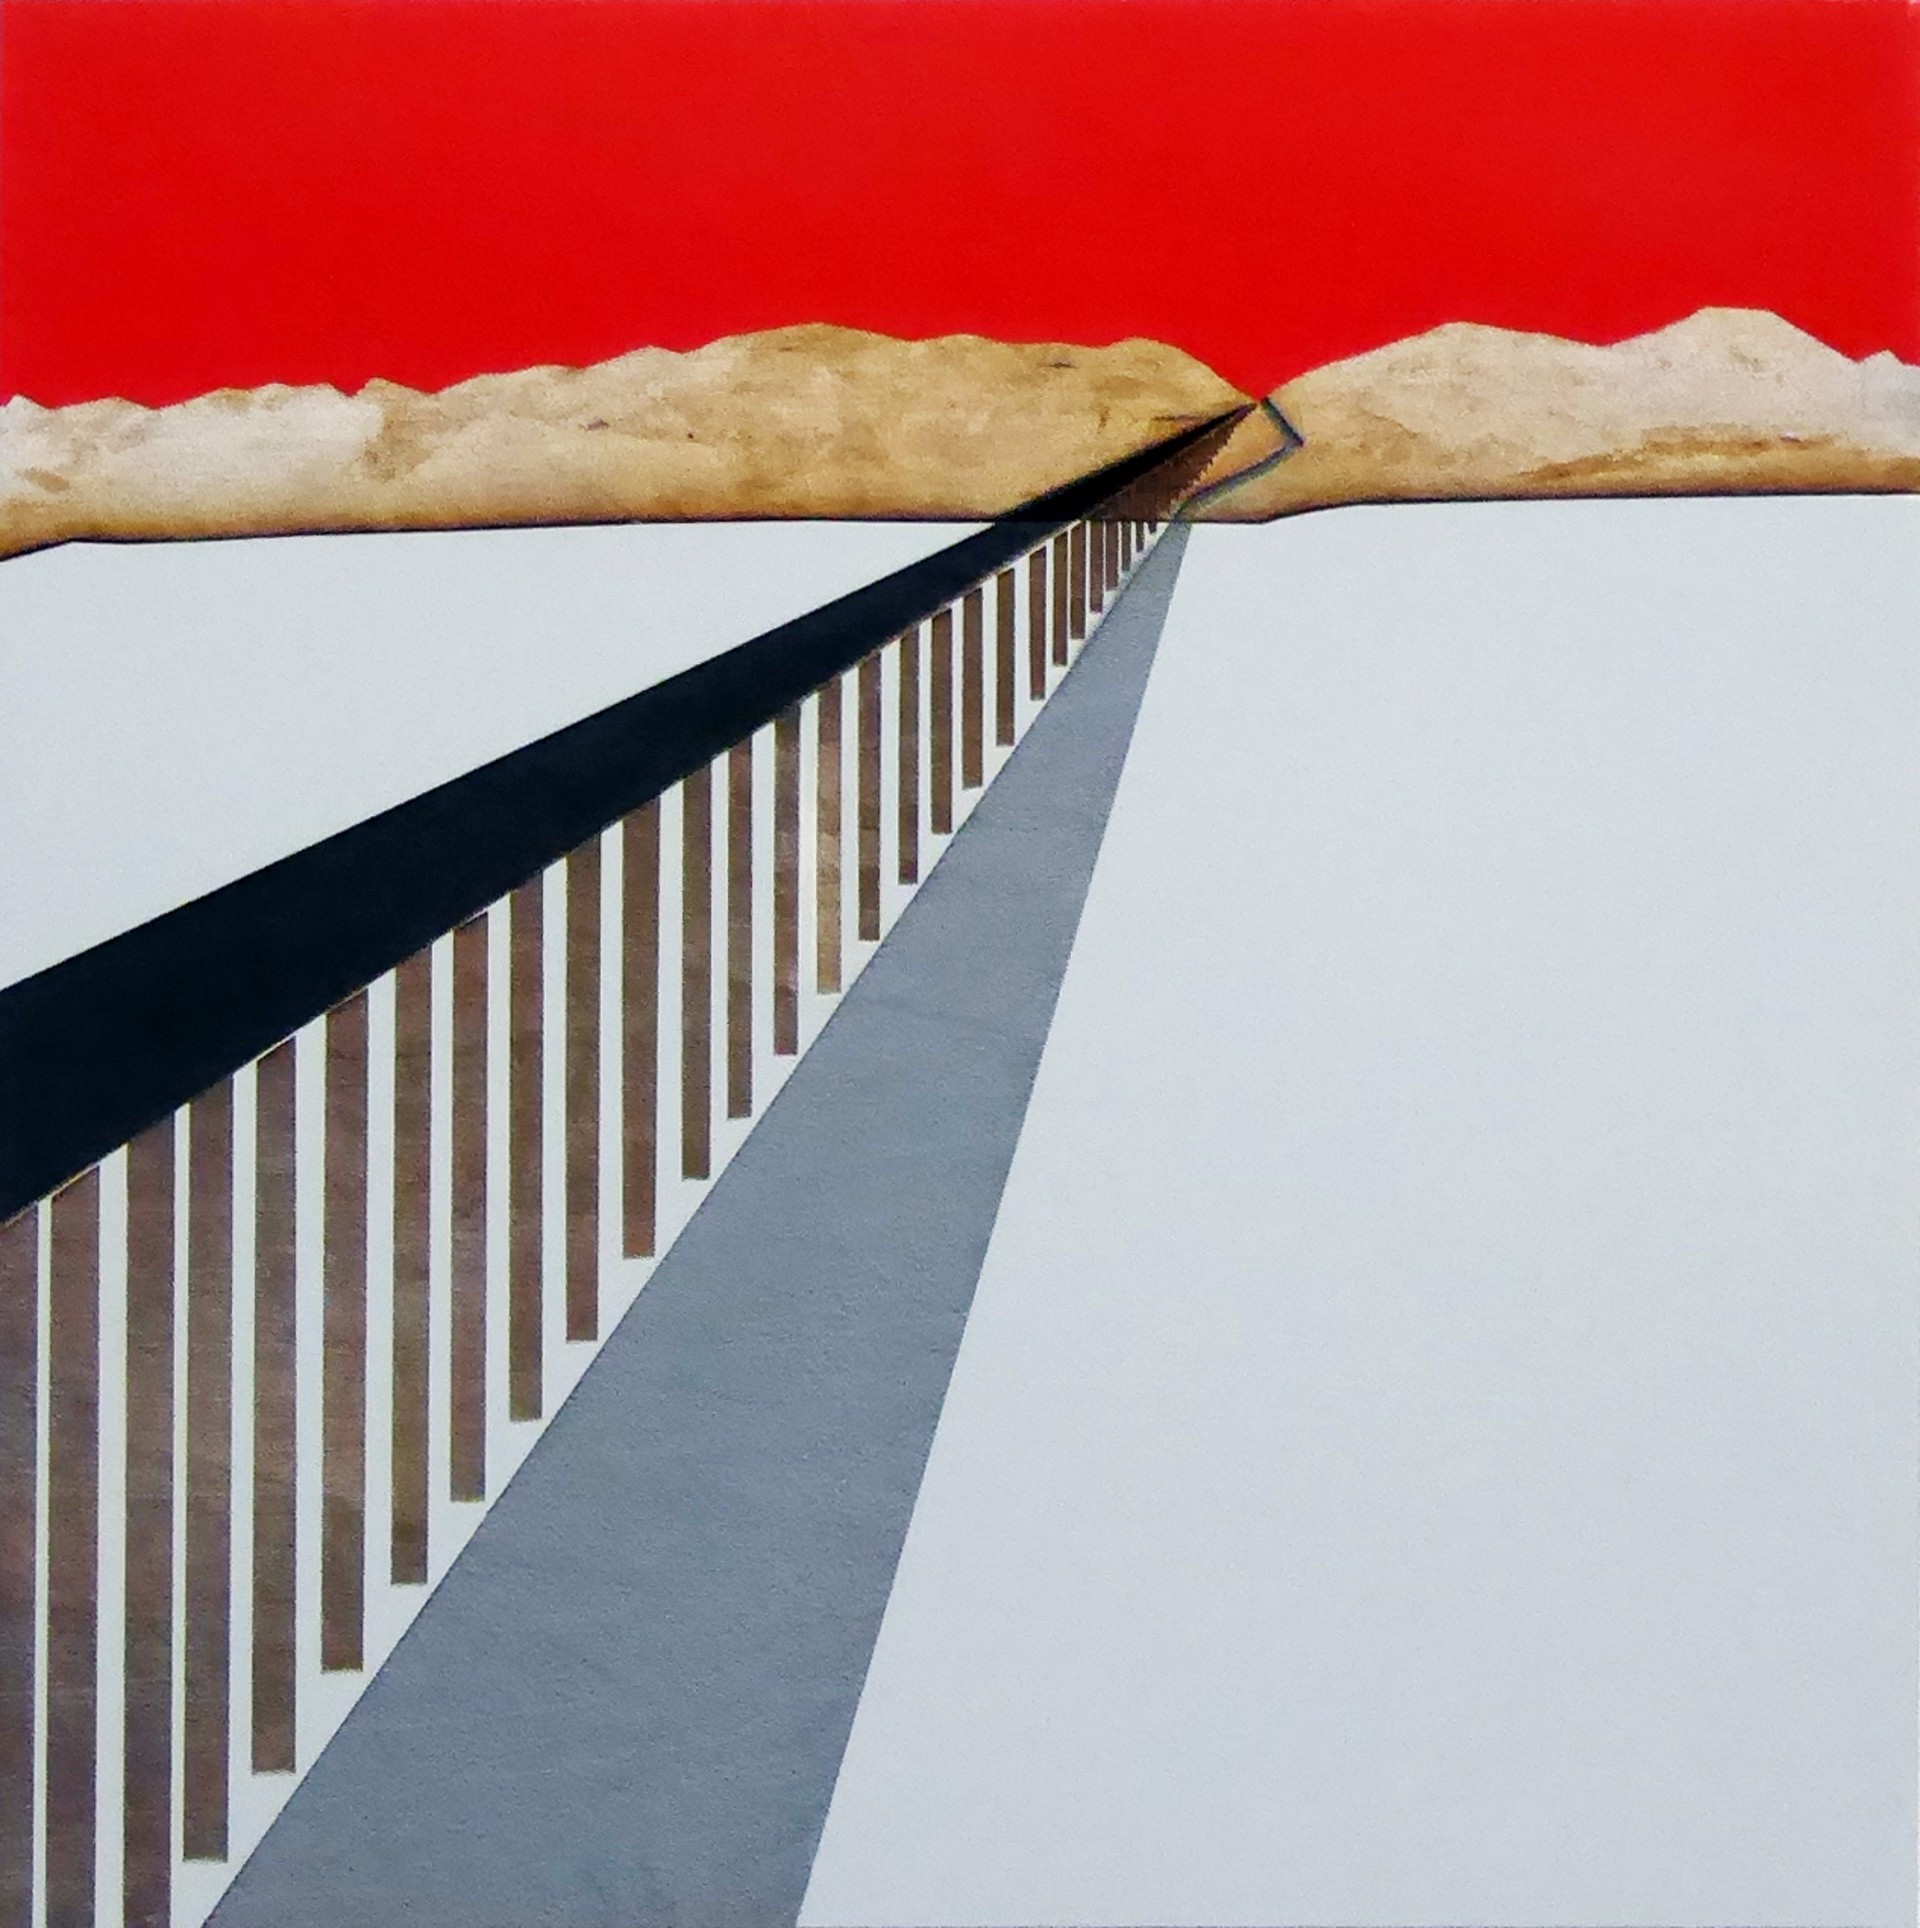 Desert Borderlands - The Wall by Robert Fogel